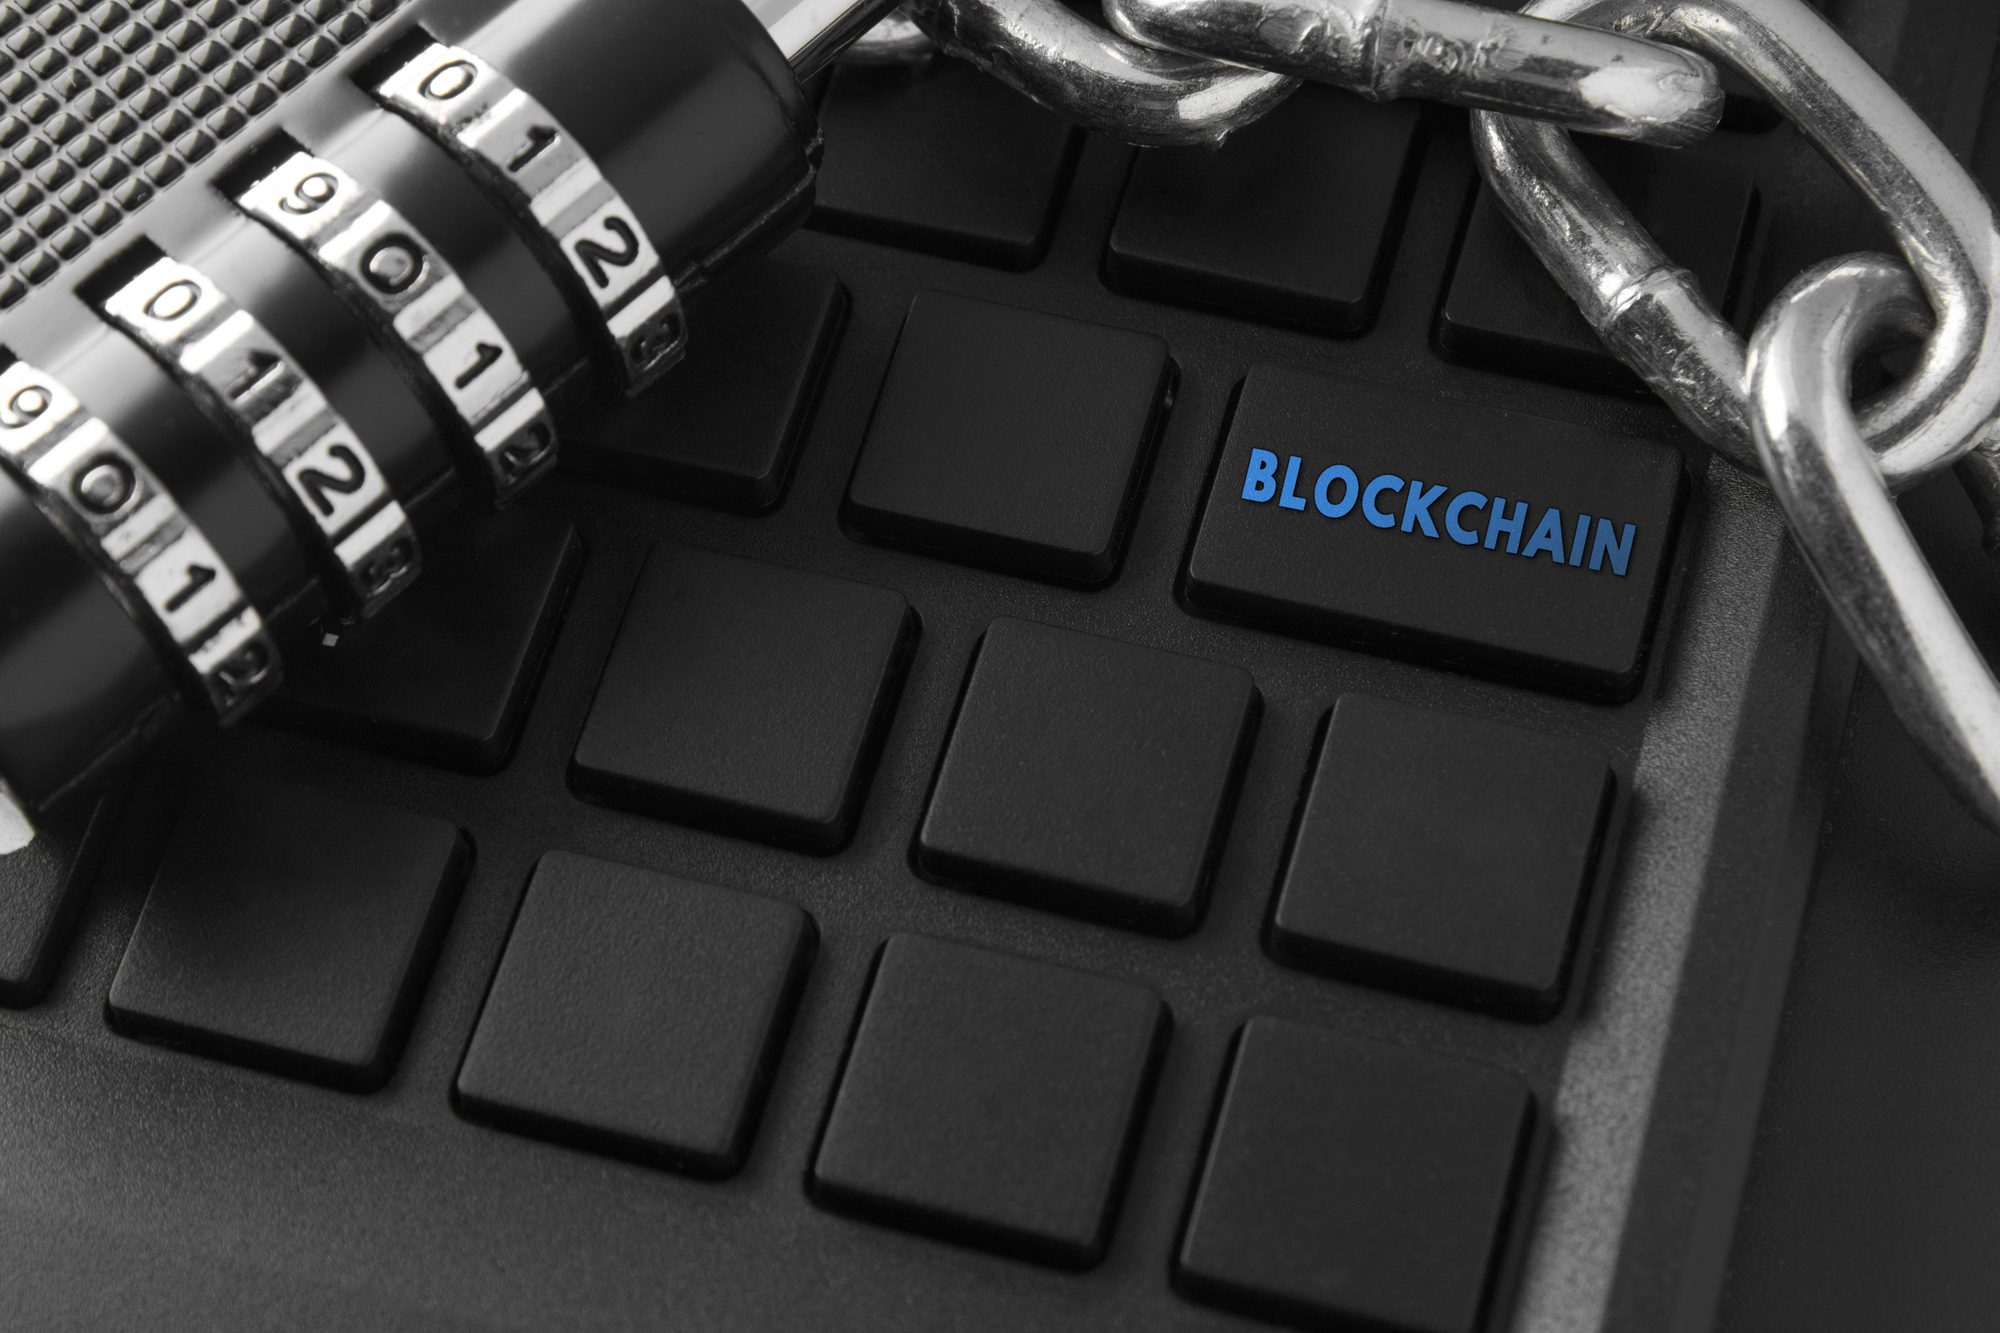 Blockchain key | Is Coinbase Vault Safe?